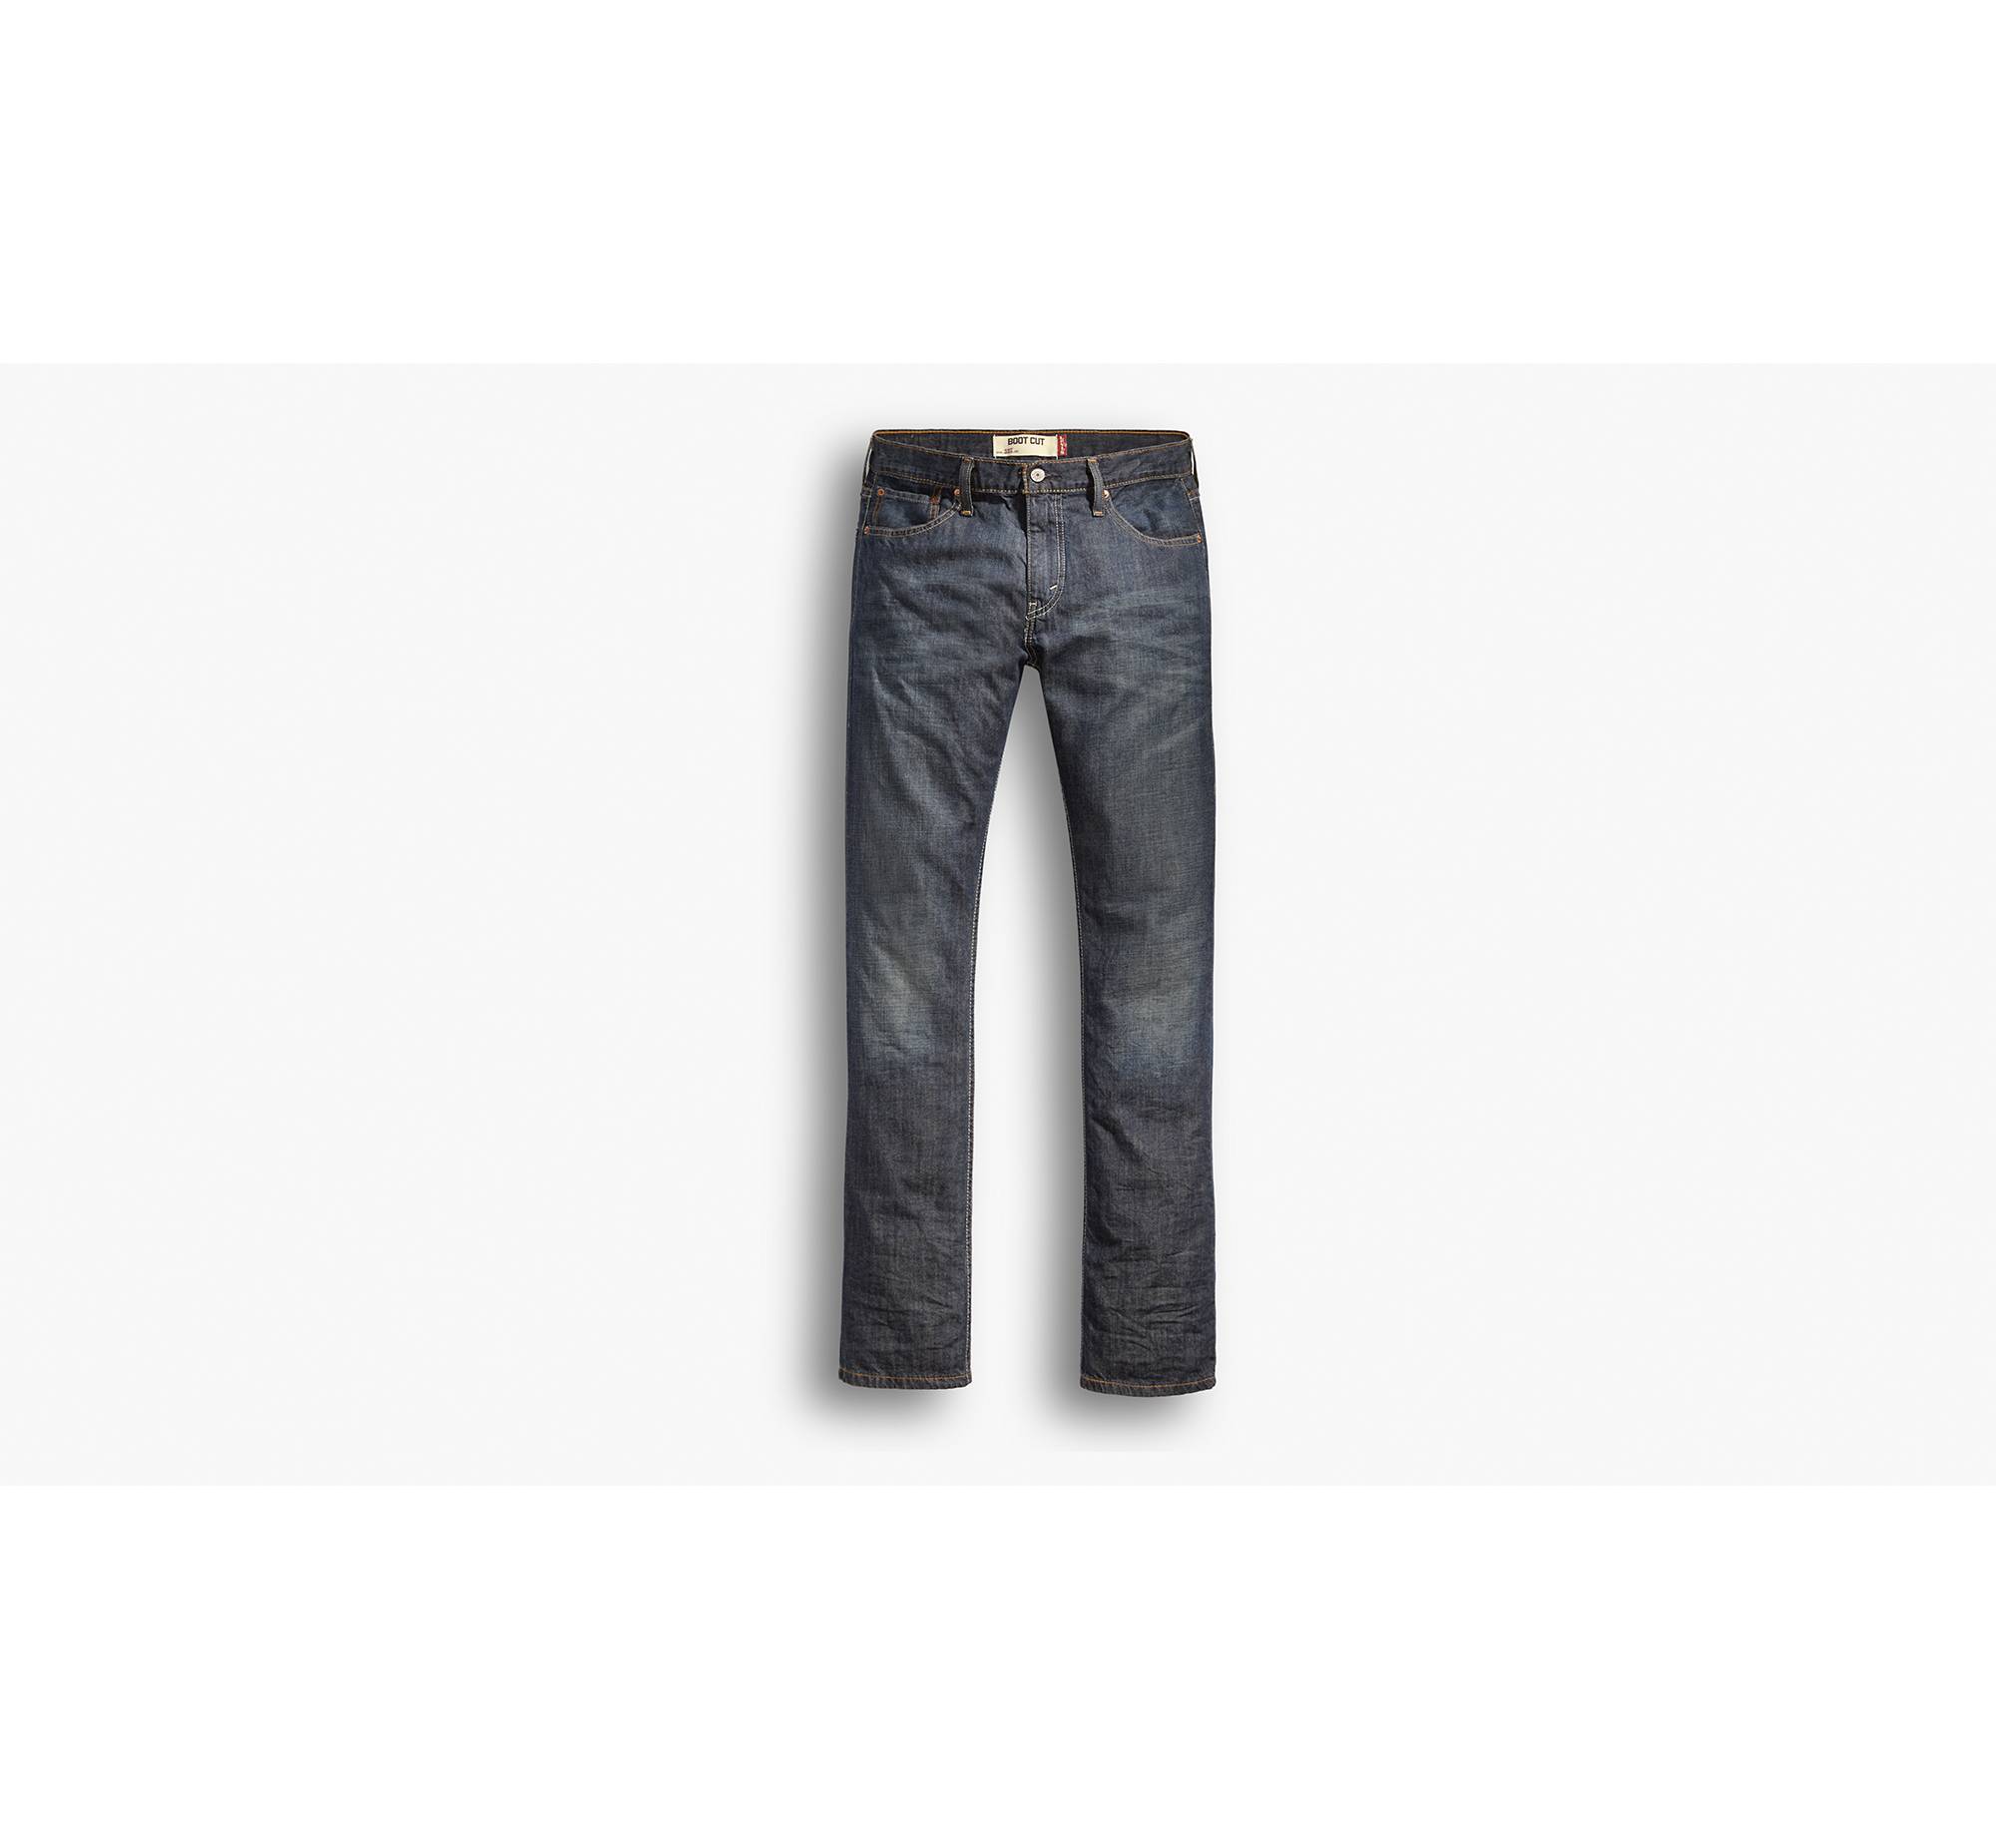 accelerator Enumerate svær at tilfredsstille 527™ Slim Bootcut Men's Jeans - Dark Wash | Levi's® US